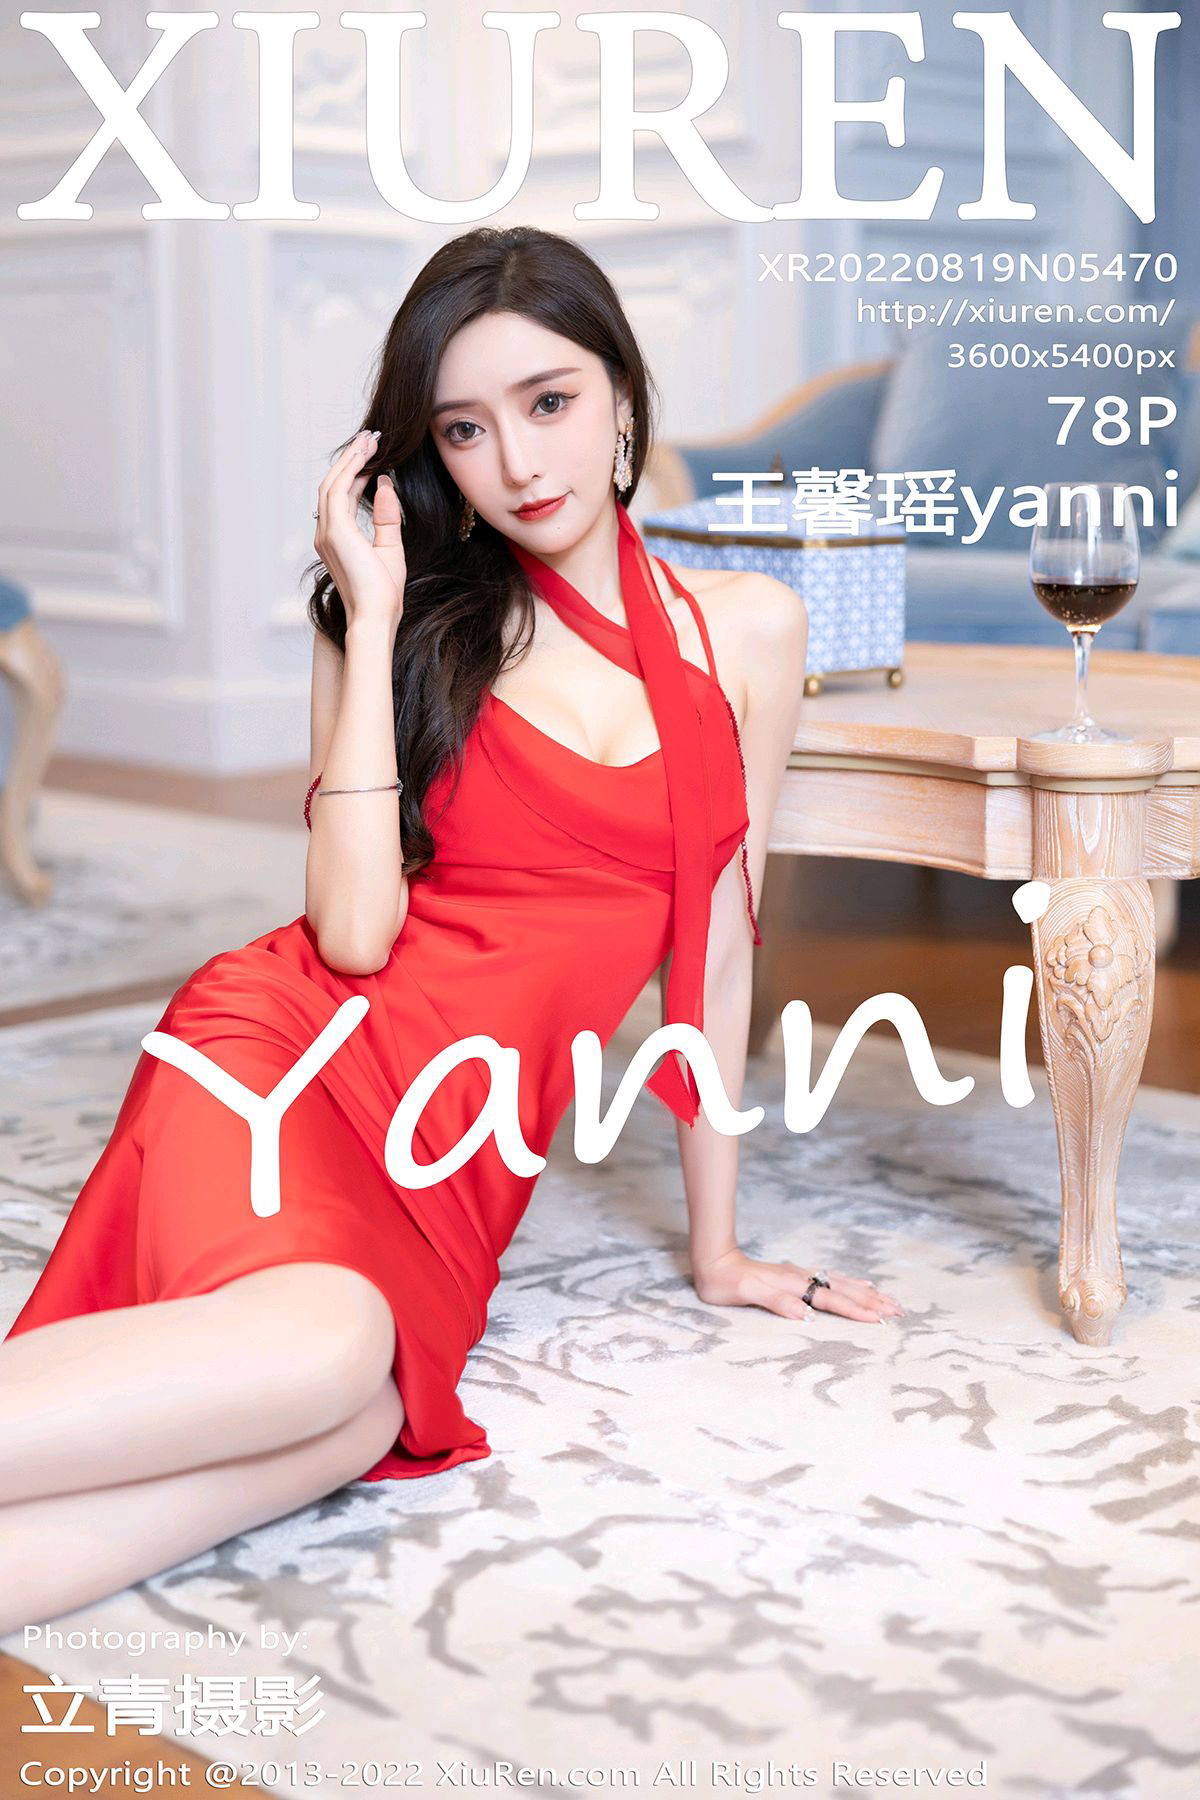 Xiuren 2022.08.19 NO.5470 Xinyao Wang yanni